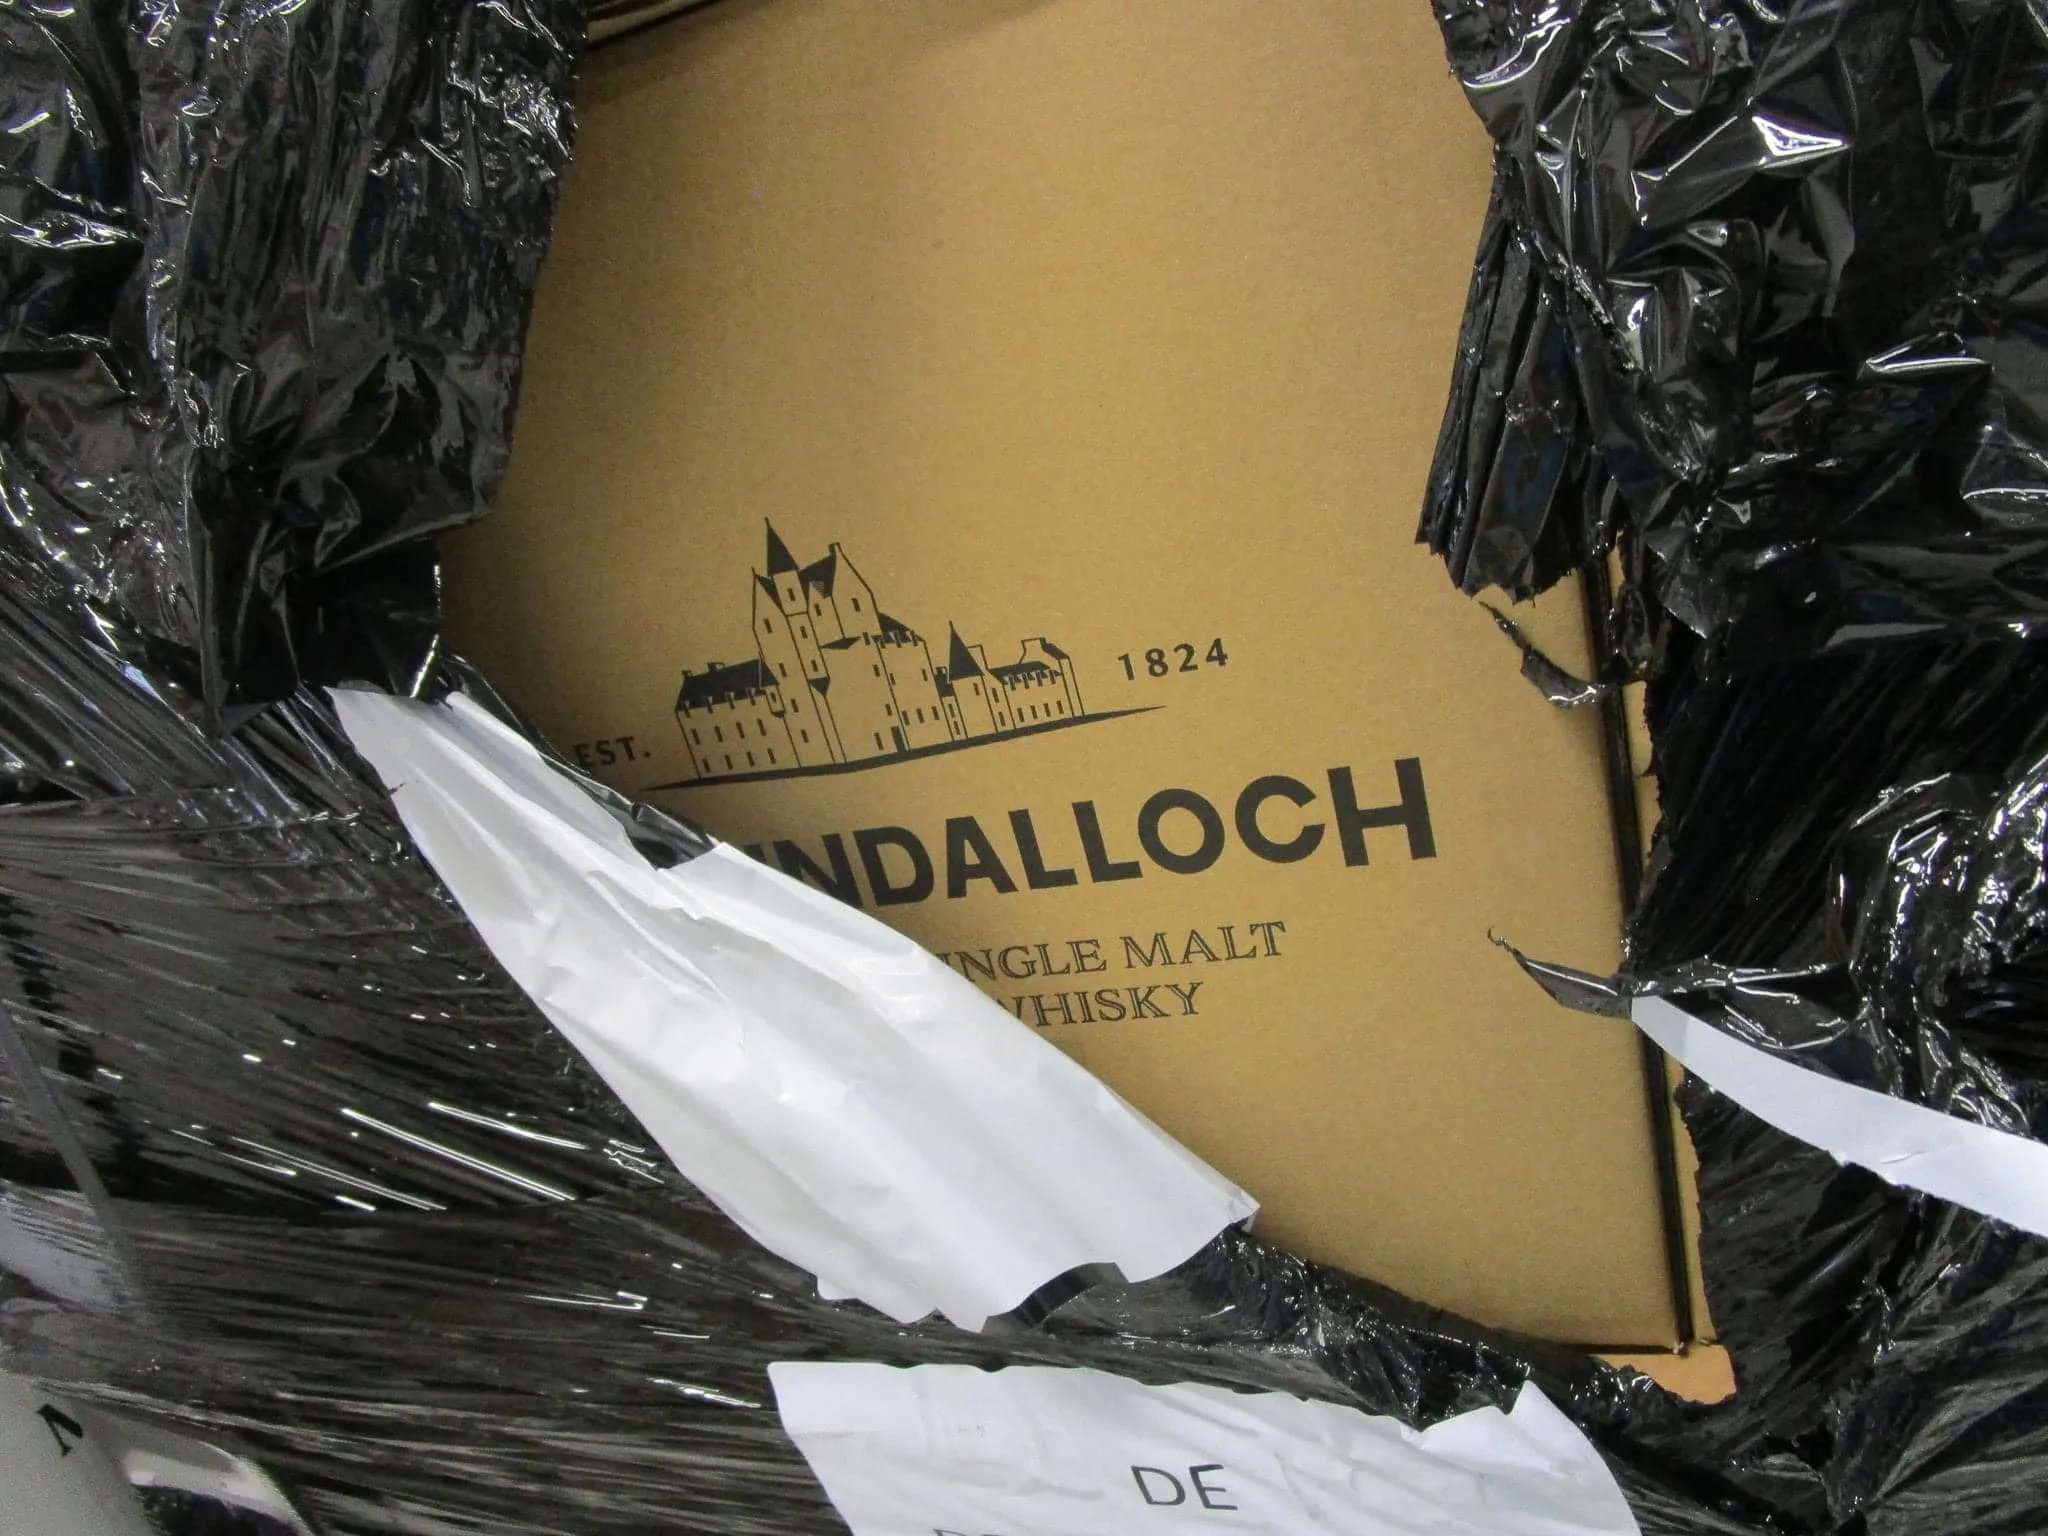 ballindaloch single malt whisky